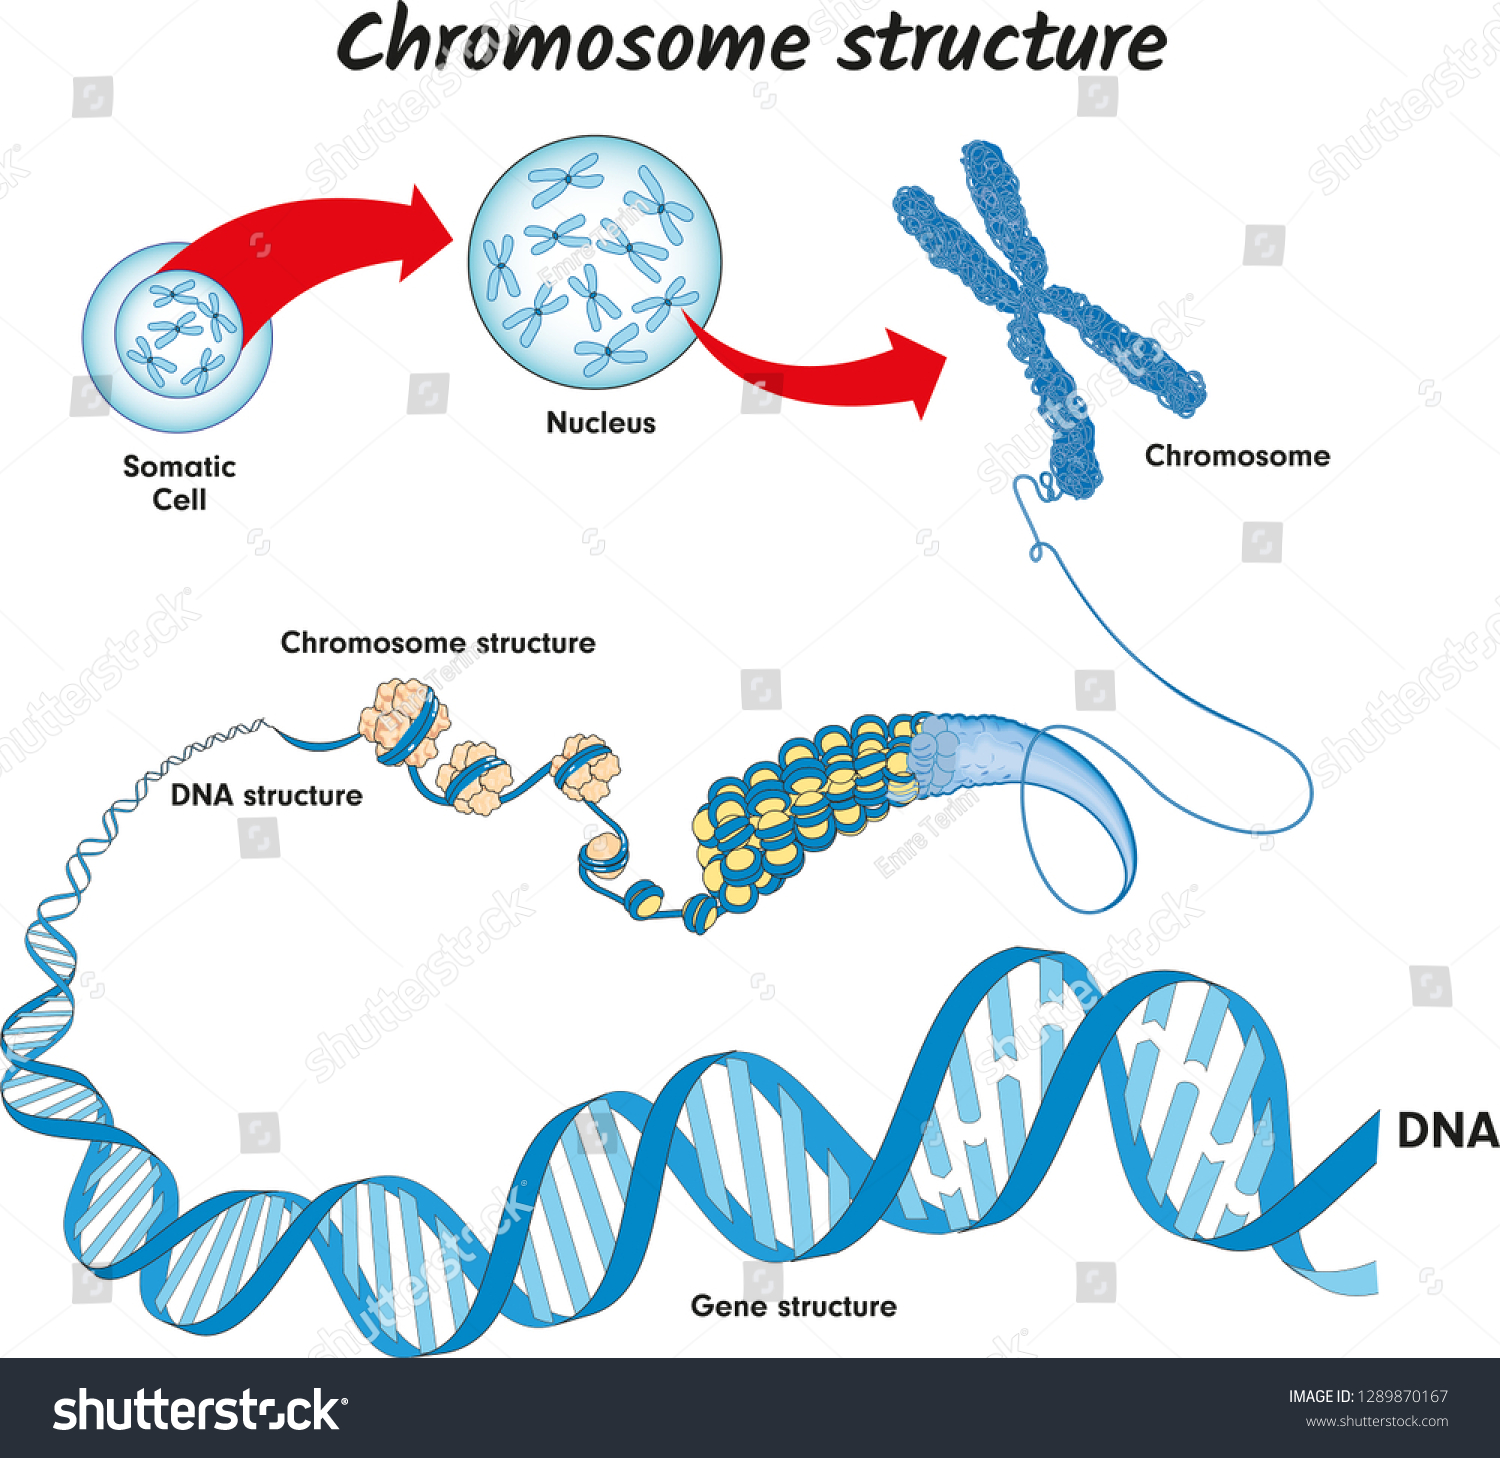 Сколько молекул днк в данной хромосоме